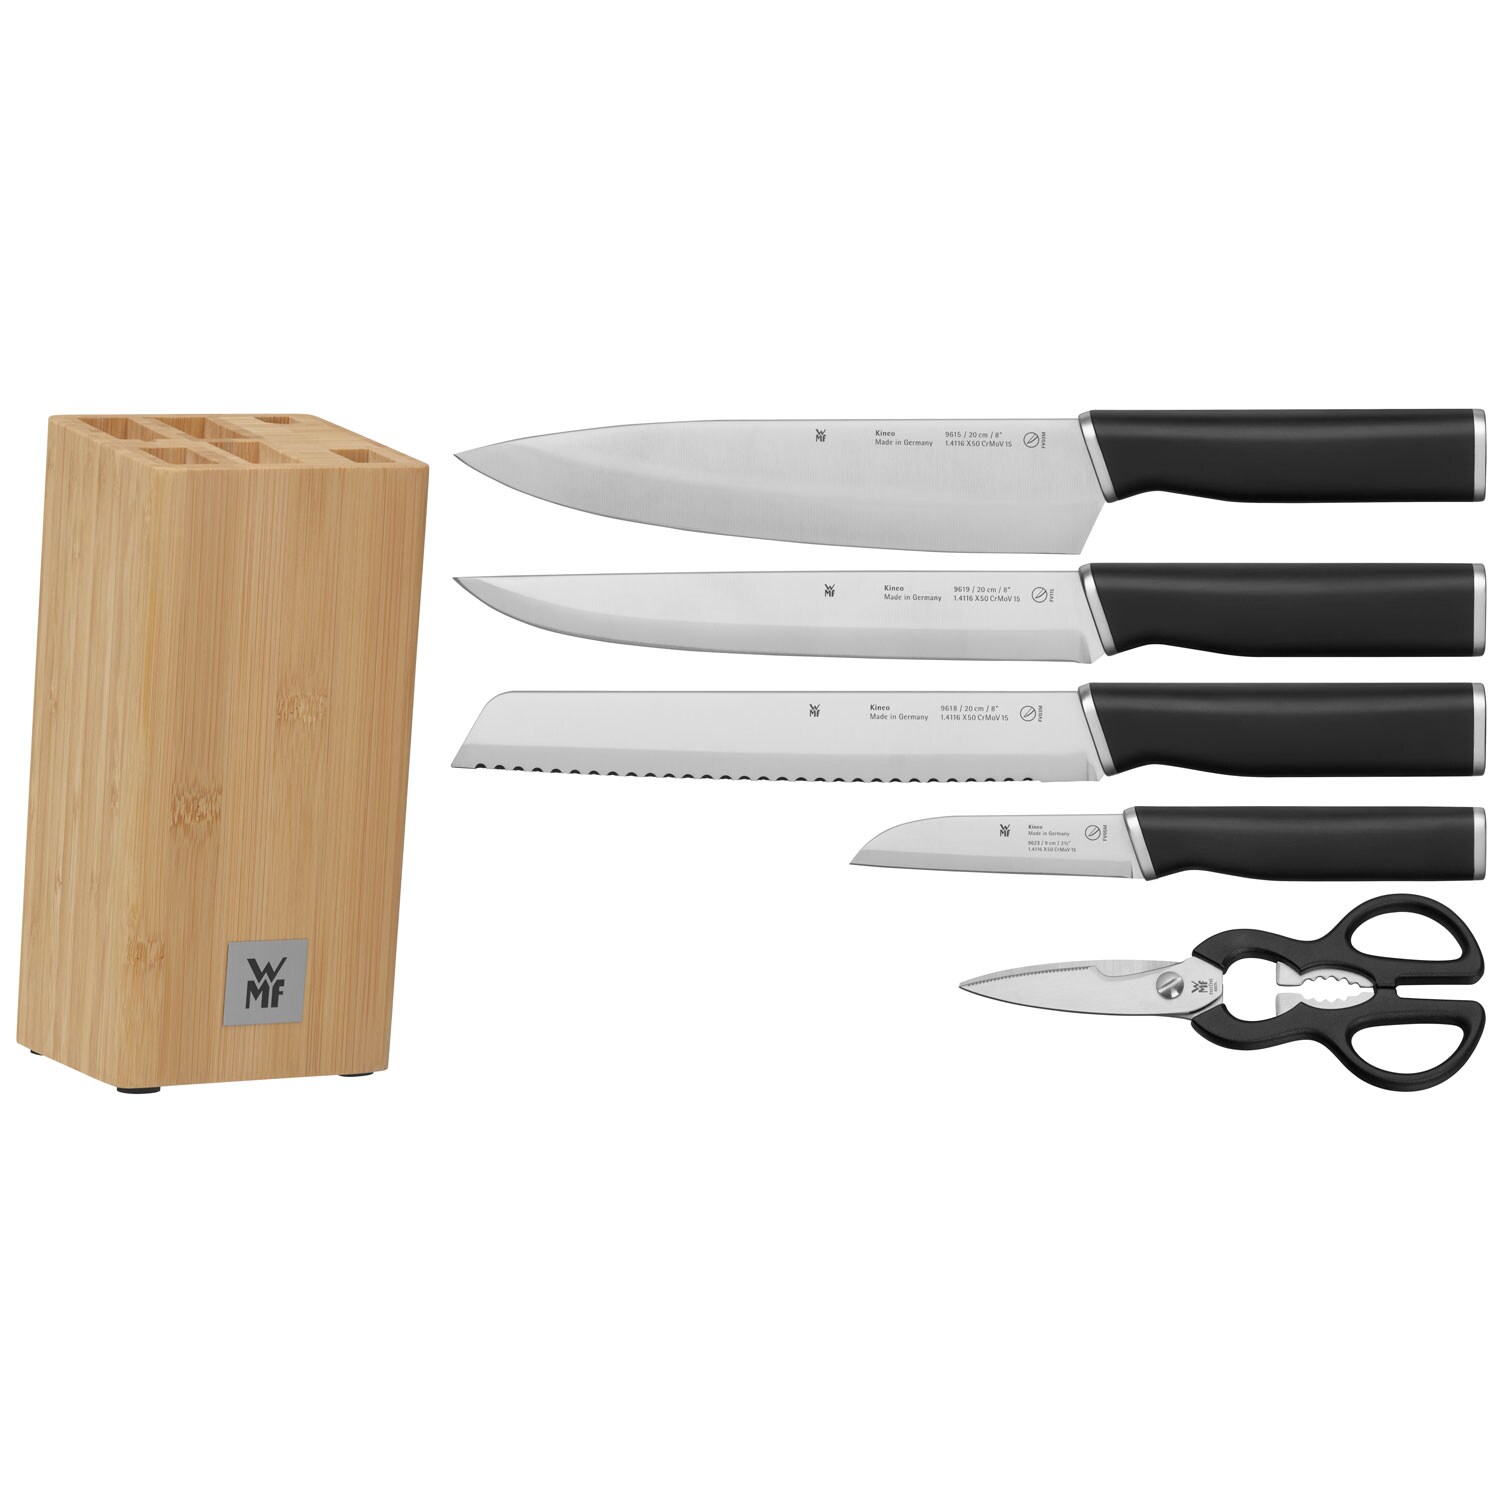 Wmf Kineo Knivblock + 4 Knivar & Sax - Knivlister & Knivblock Rostfritt Stål Trä